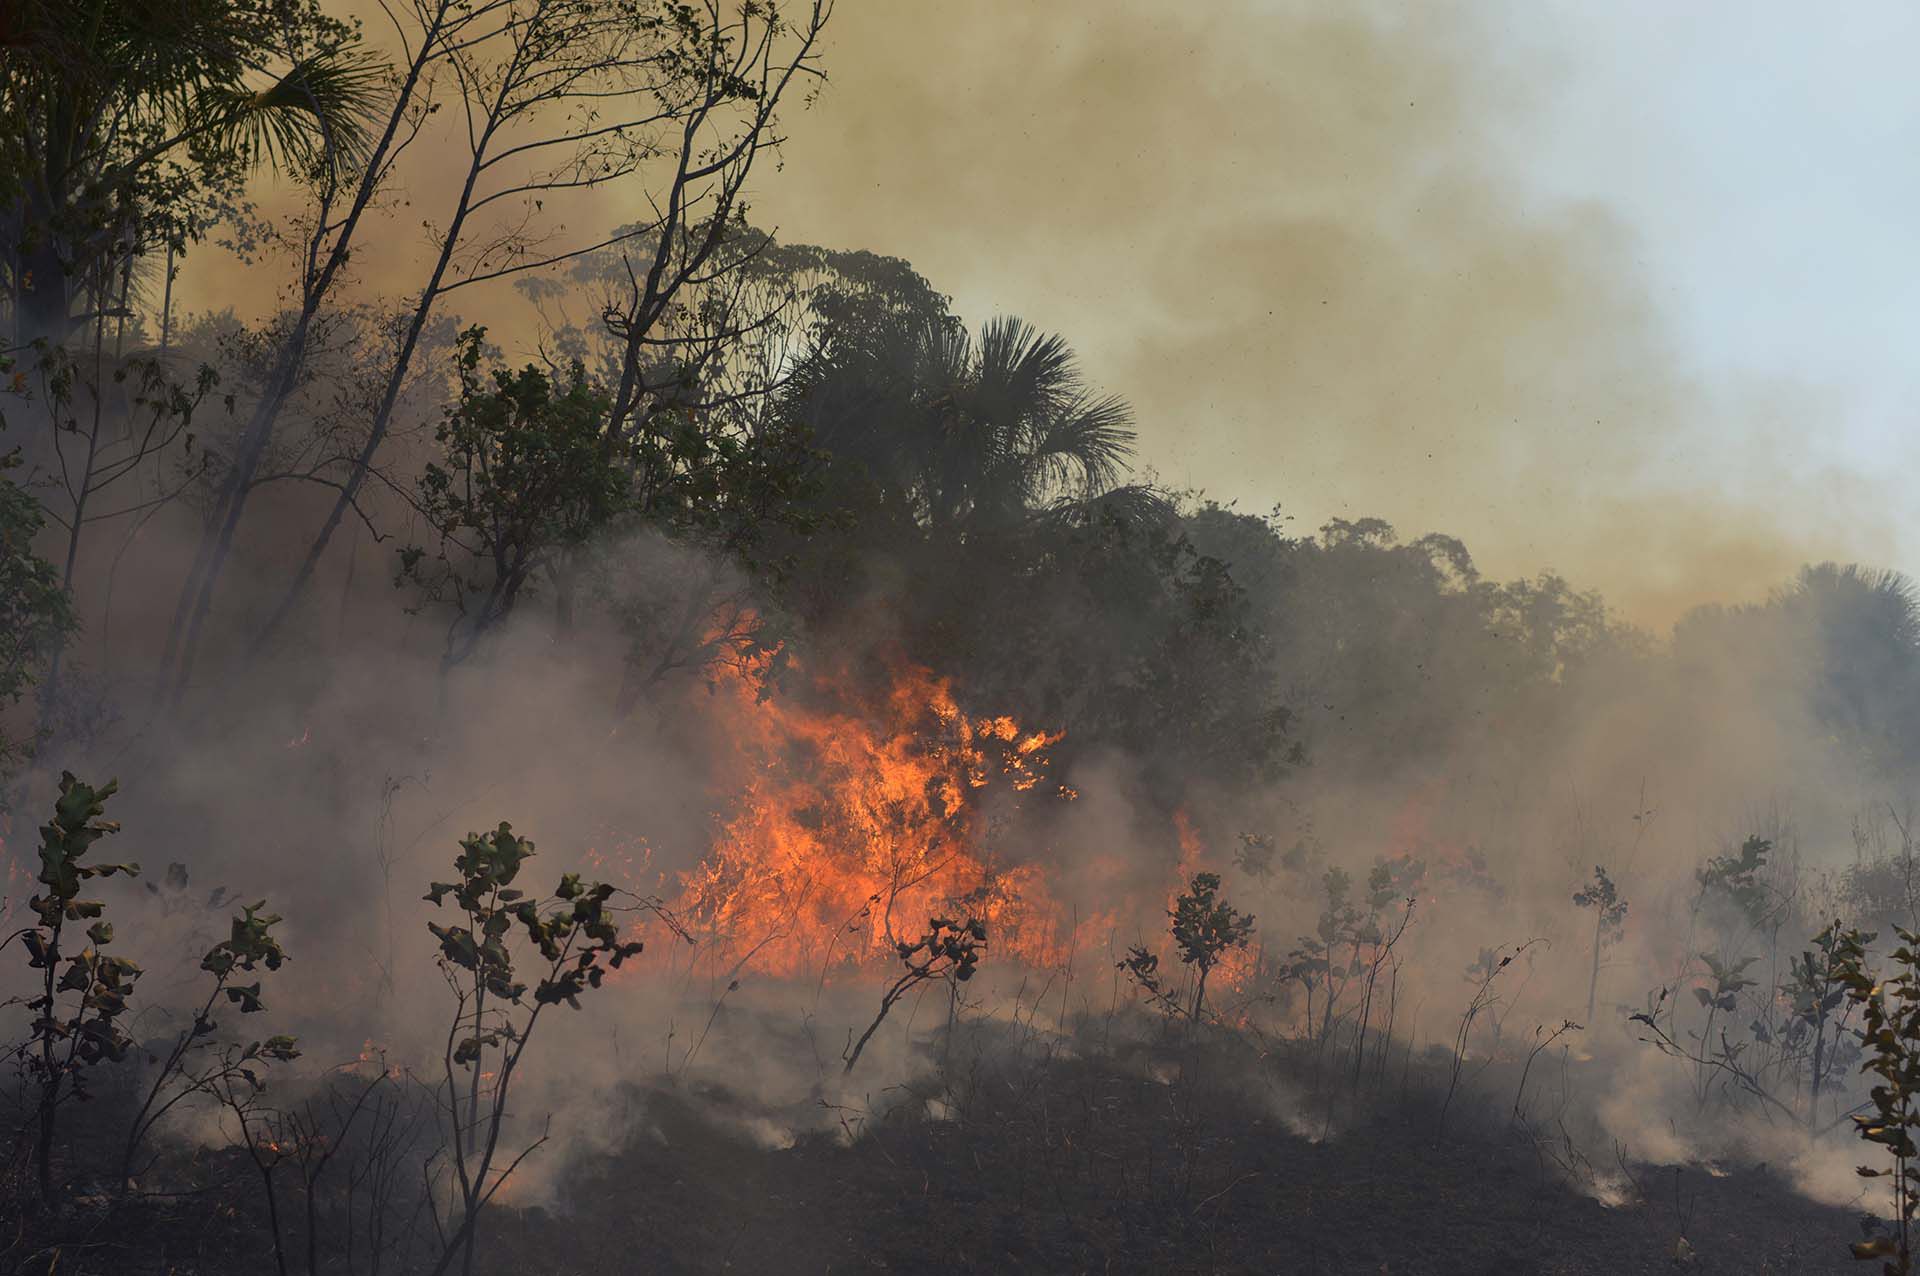 Los incendios forestales en el Amazonas han causado preocupación en Europa (REUTERS/Lucas Landau)